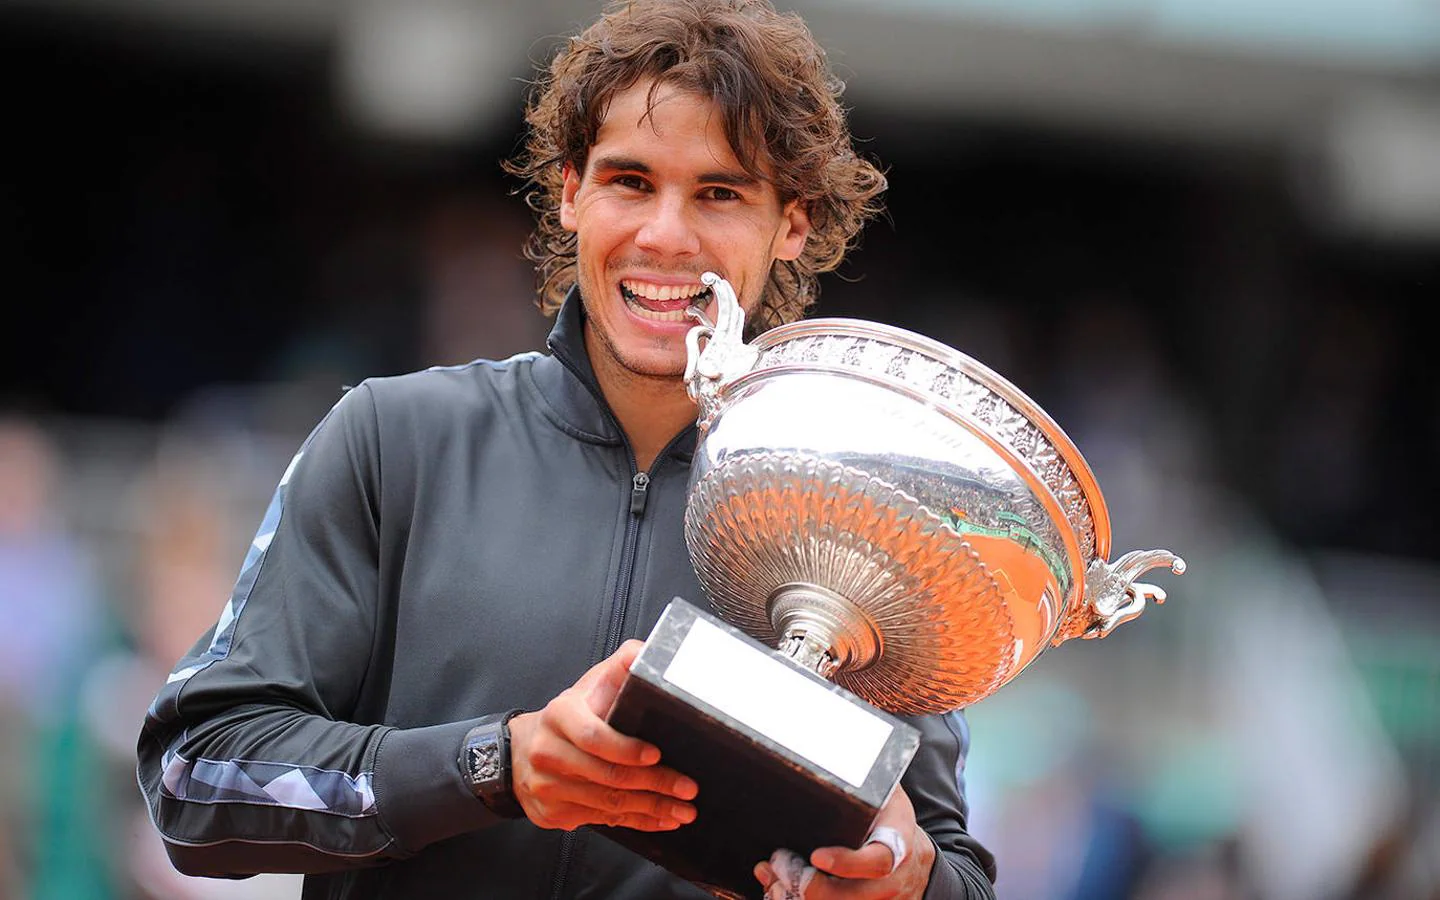 2012 | Roland Garros. El séptimo Roland Garros llegó con su victoria frente a Djokovic, en un partido que duró todo un fin de semana debido a las lluvias.